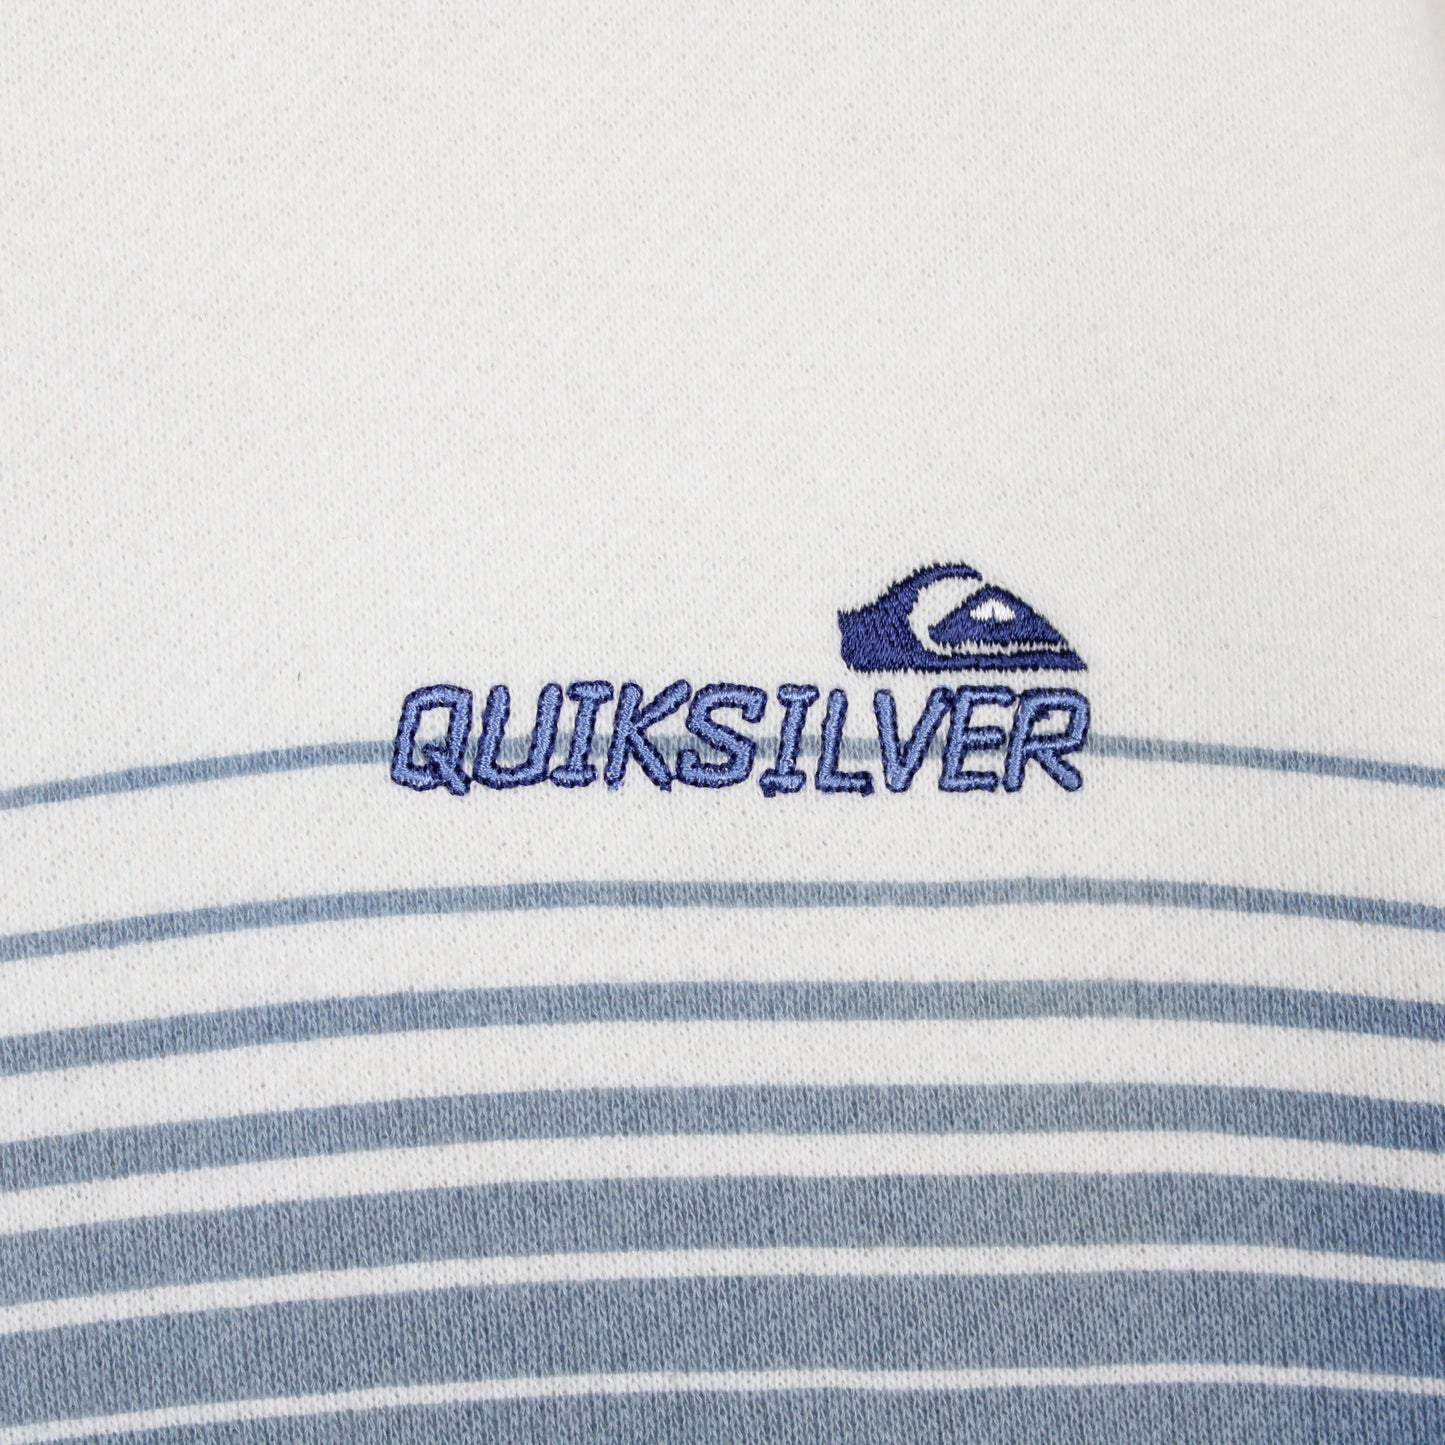 Vintage 90s Quiksilver Sweatshirt - M